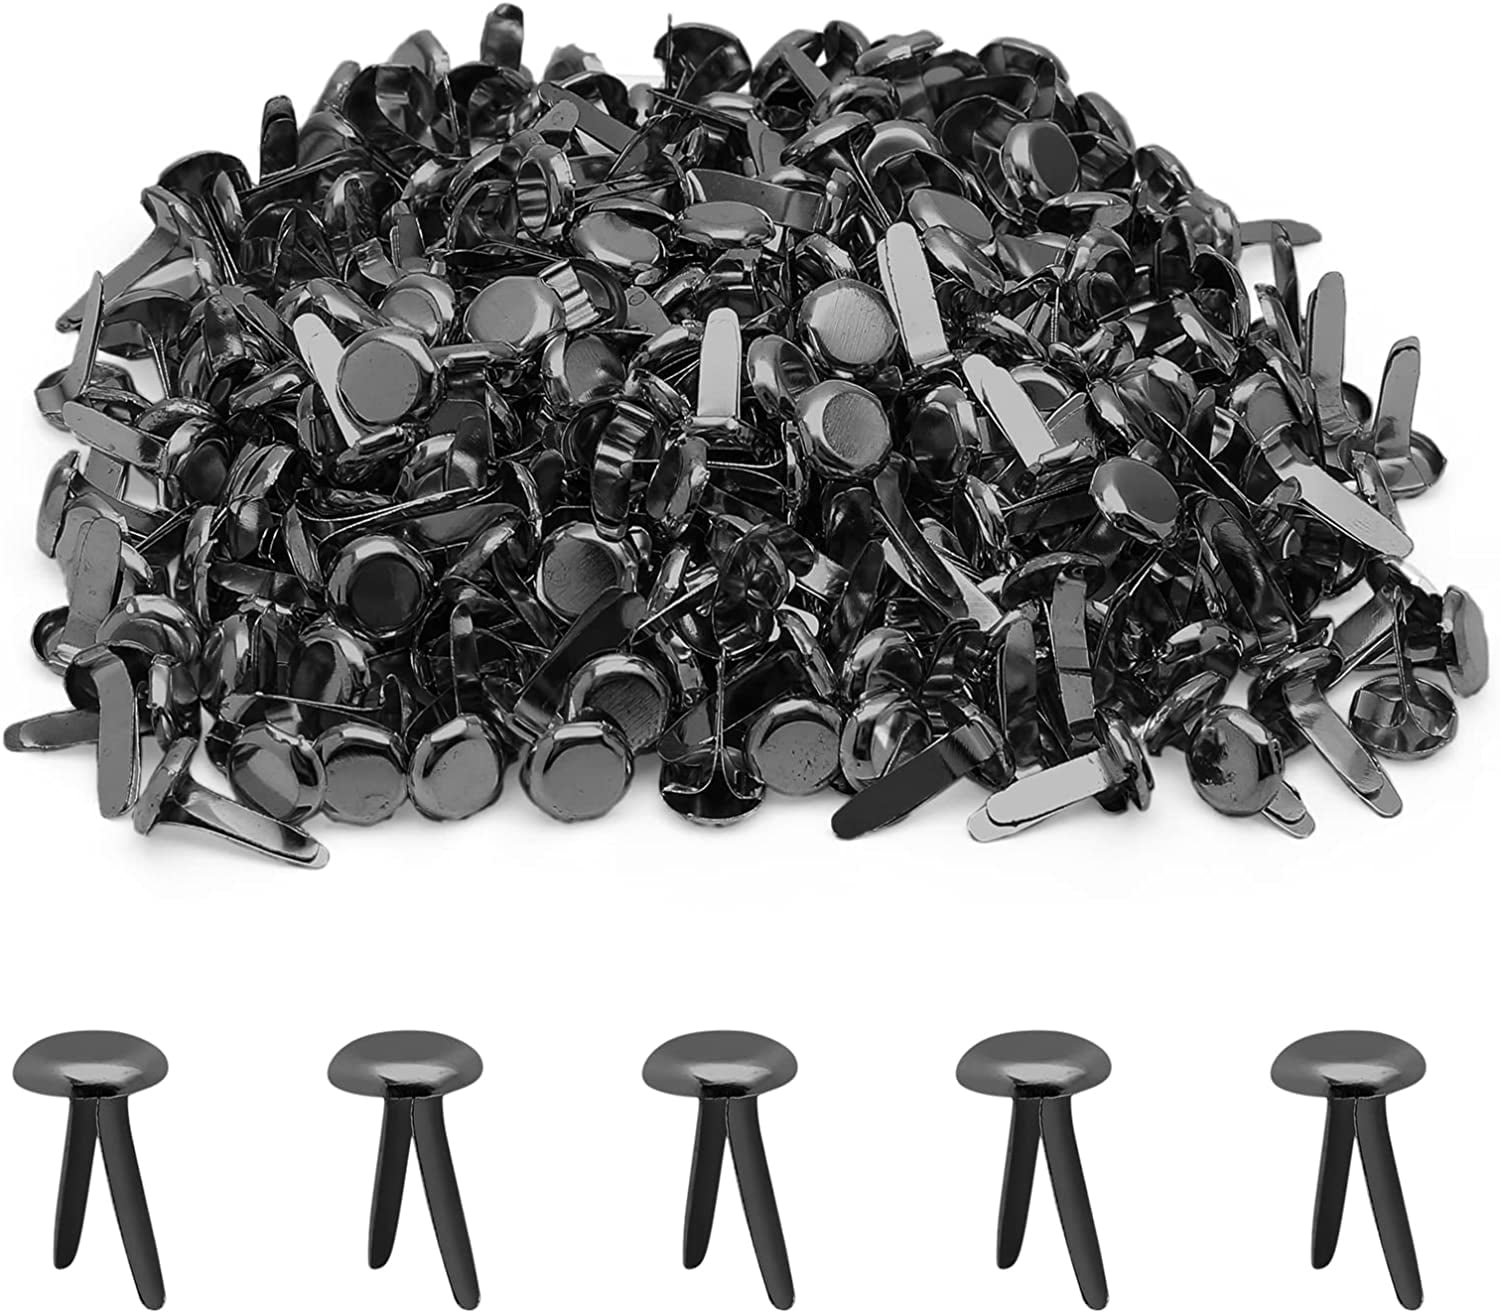 100pcs Silver Split Pins Pastel Metal Brad Fasteners Mini Brads Round Brads  for DIY Crafts Projects Scrapbooking Offi(8mm x 15mm), MPU738-MBEB-Yin